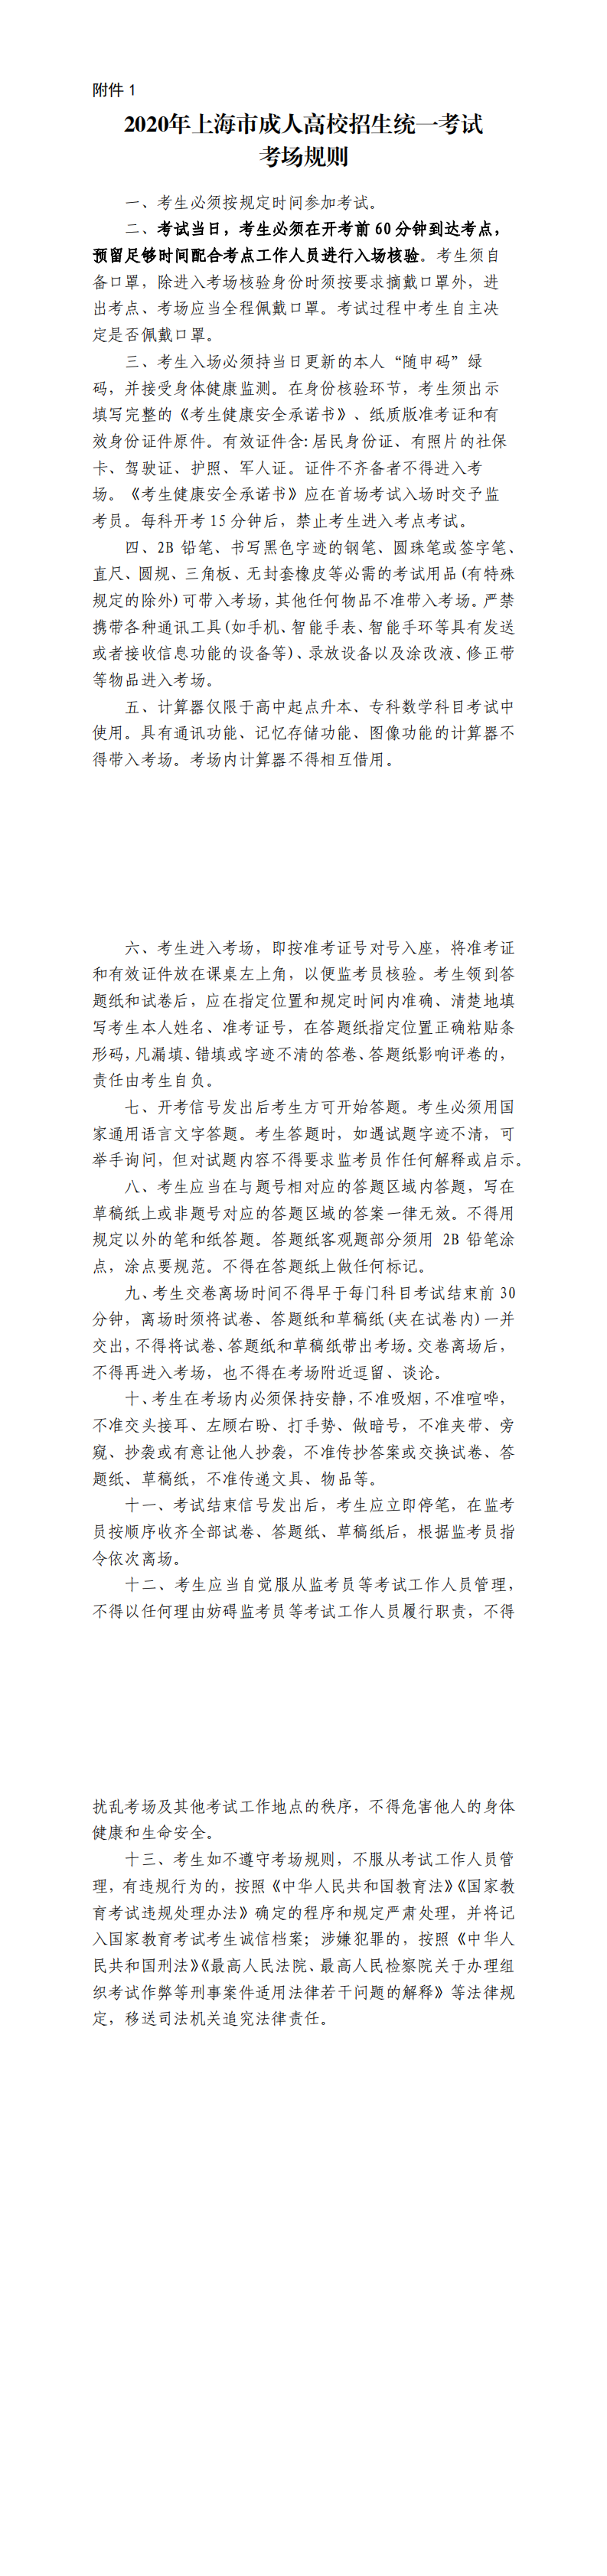 2020年上海市成人高考考场规则